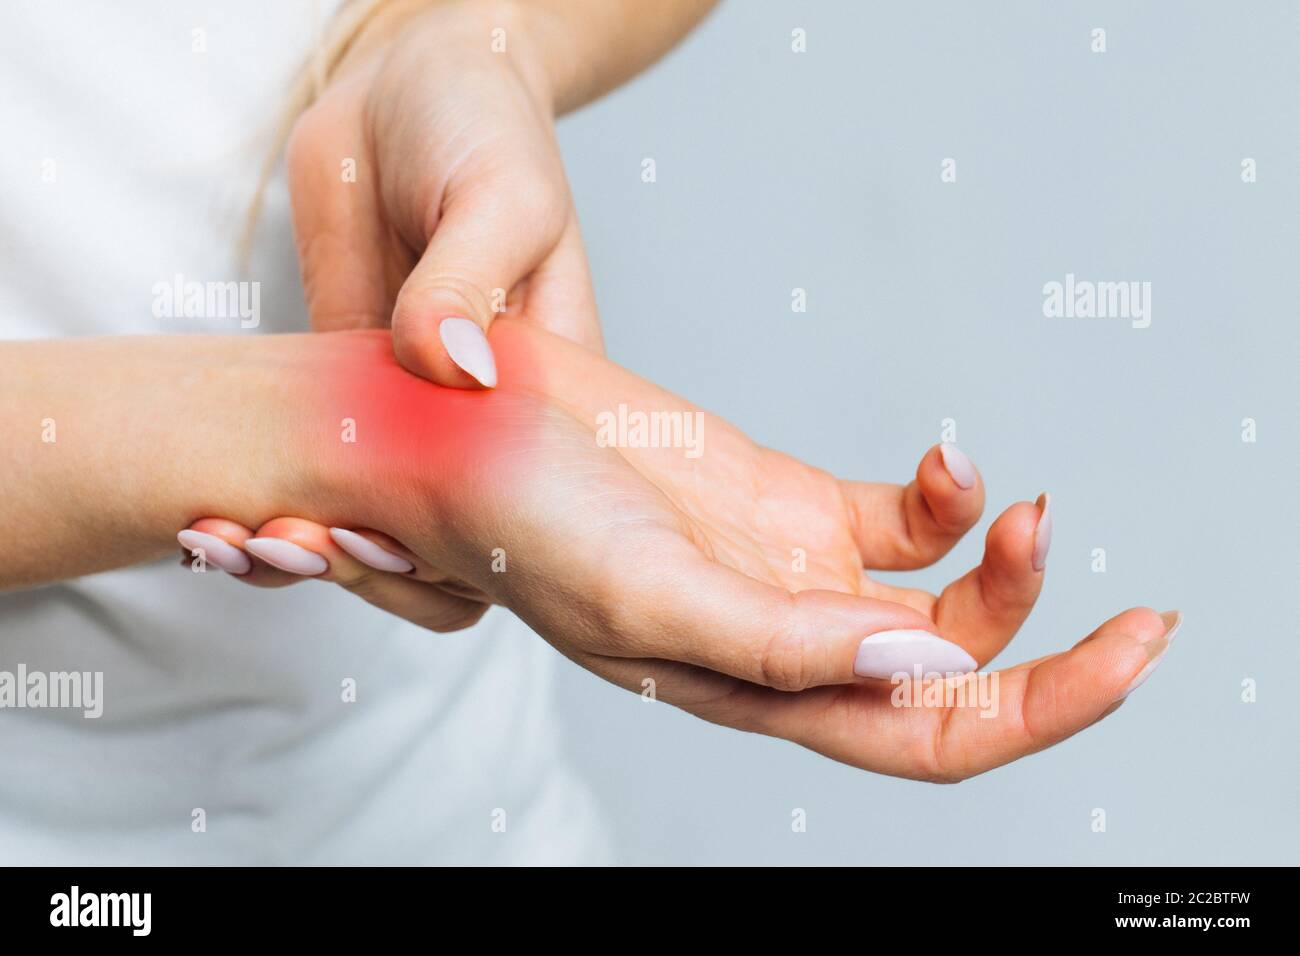 Closeup di braccia femminili che tengono il suo polso doloroso causato da un lavoro prolungato sul computer, laptop, colorato in rosso.Carpal tunnel sindrome, artrite, Foto Stock